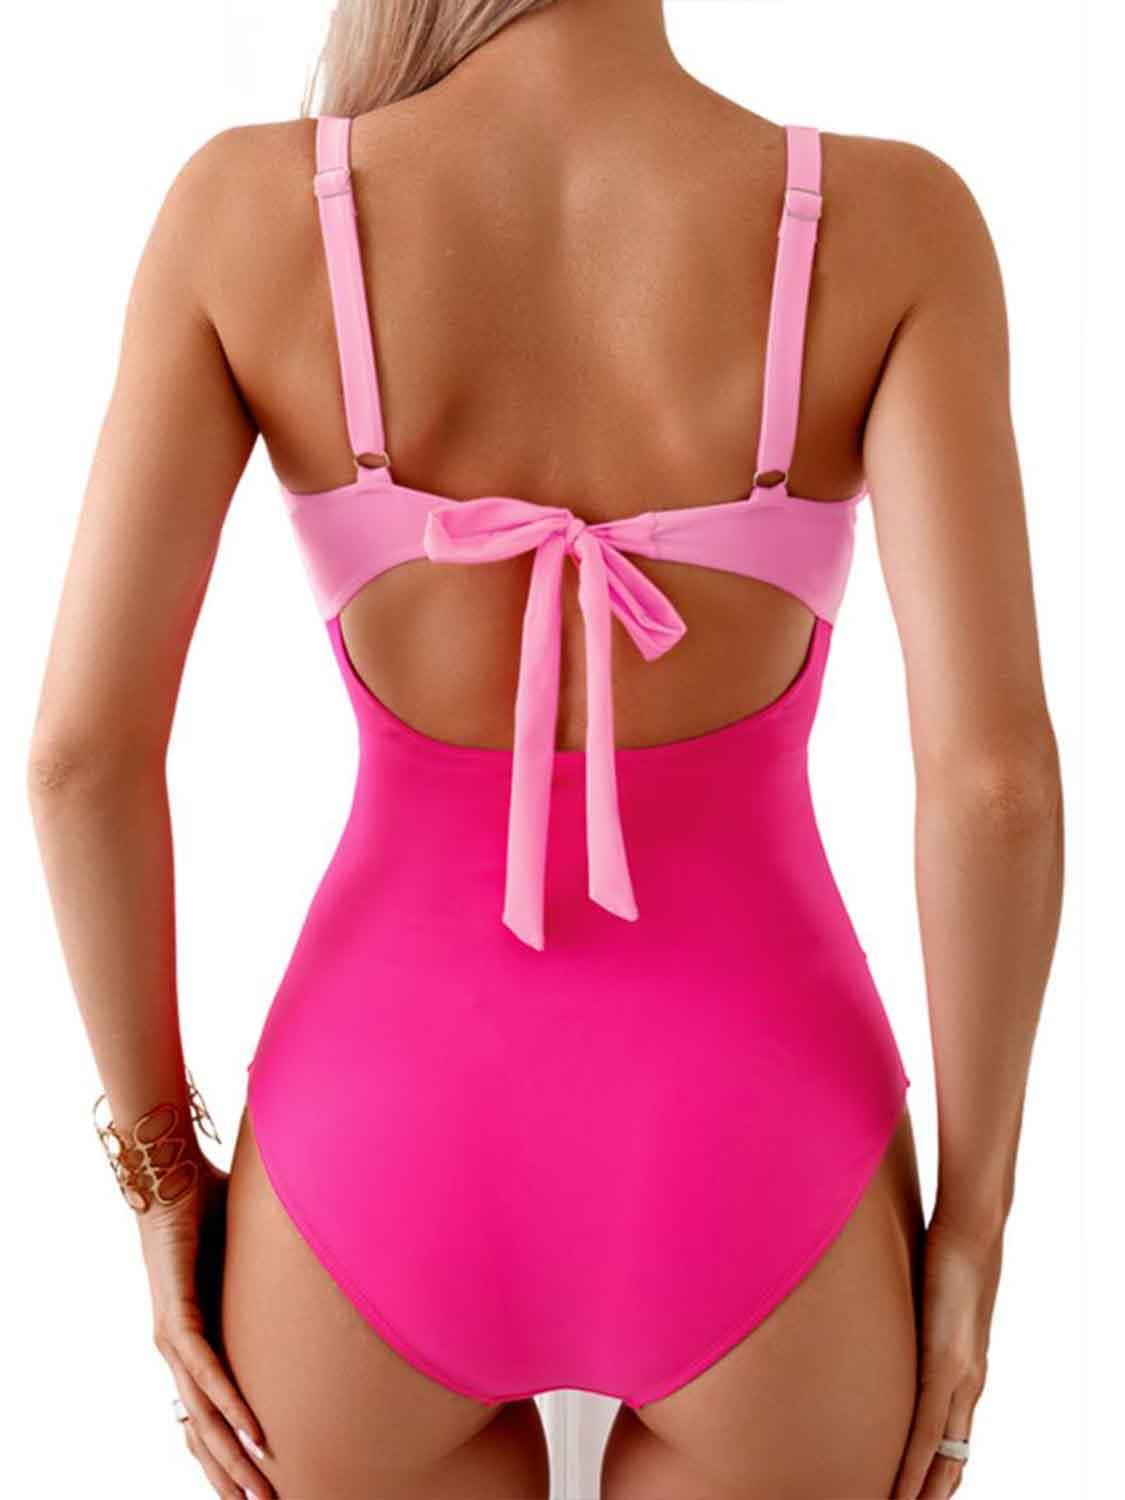 Bona Fide Fashion - Tied Cutout Contrast One-Piece Swimwear - Women Fashion - Bona Fide Fashion